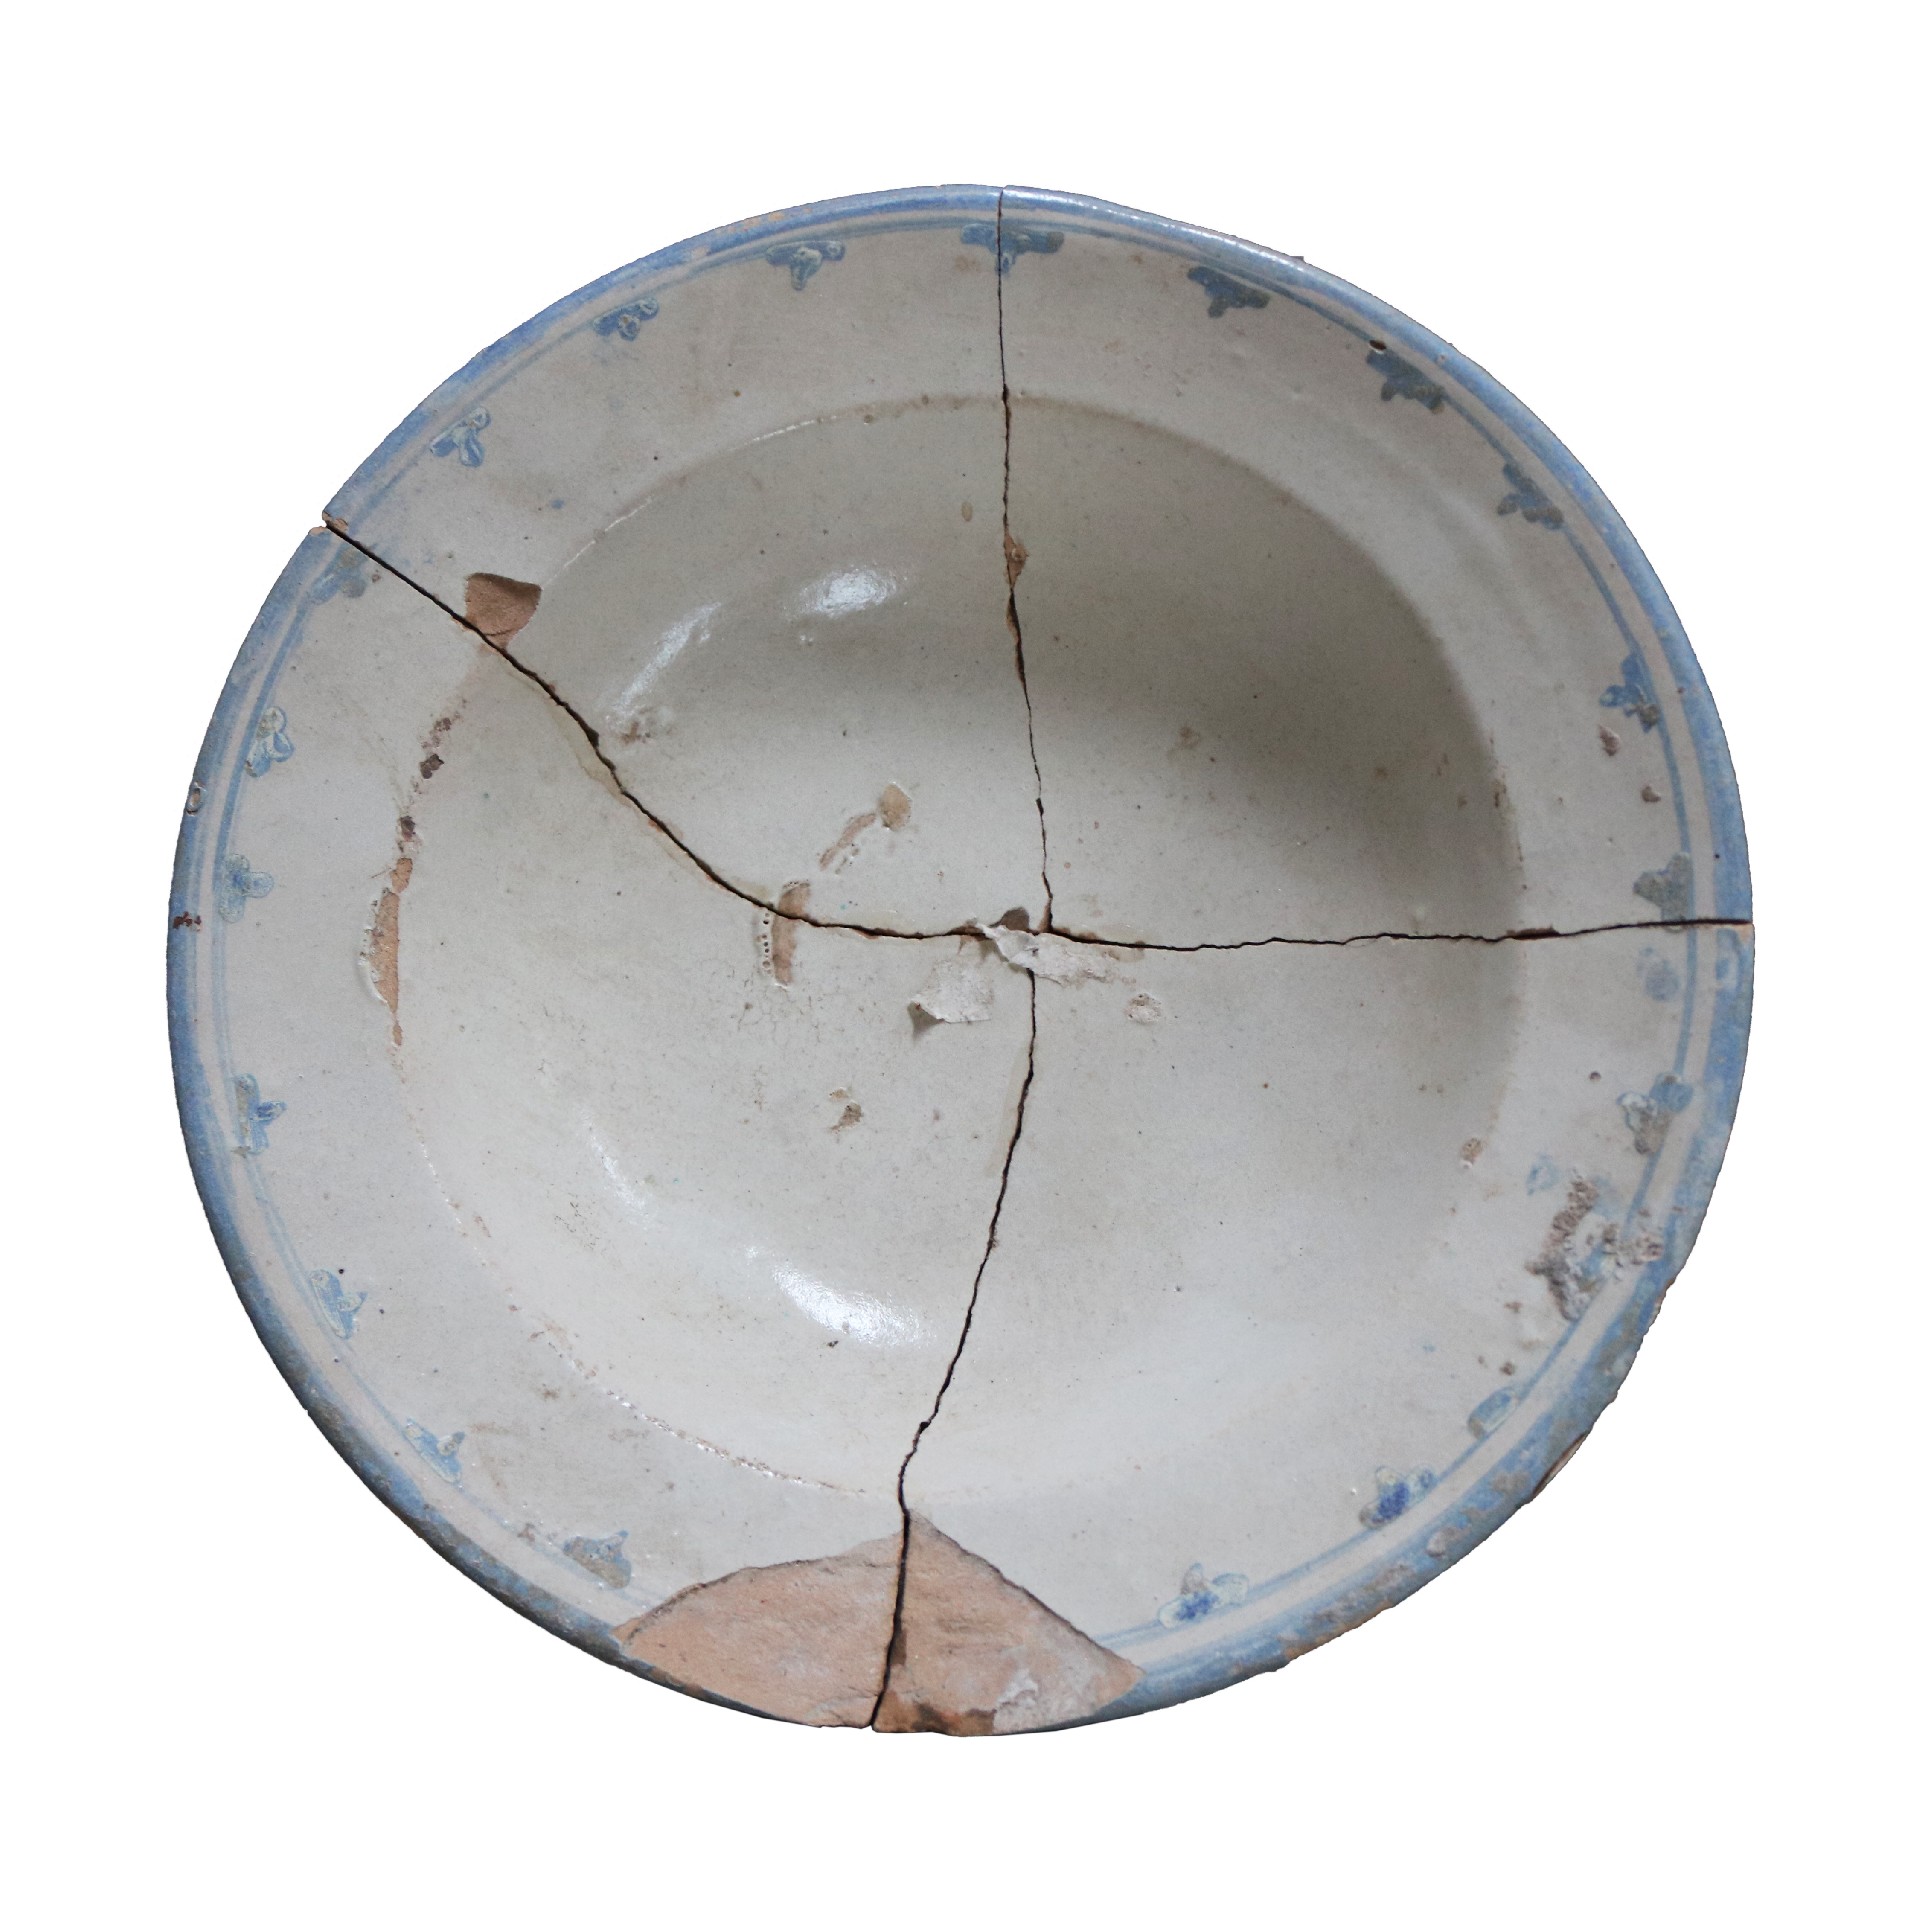 Antico piatto in maiolica - Ceramiche - Oggettistica - Prodotti - Antichità Fiorillo